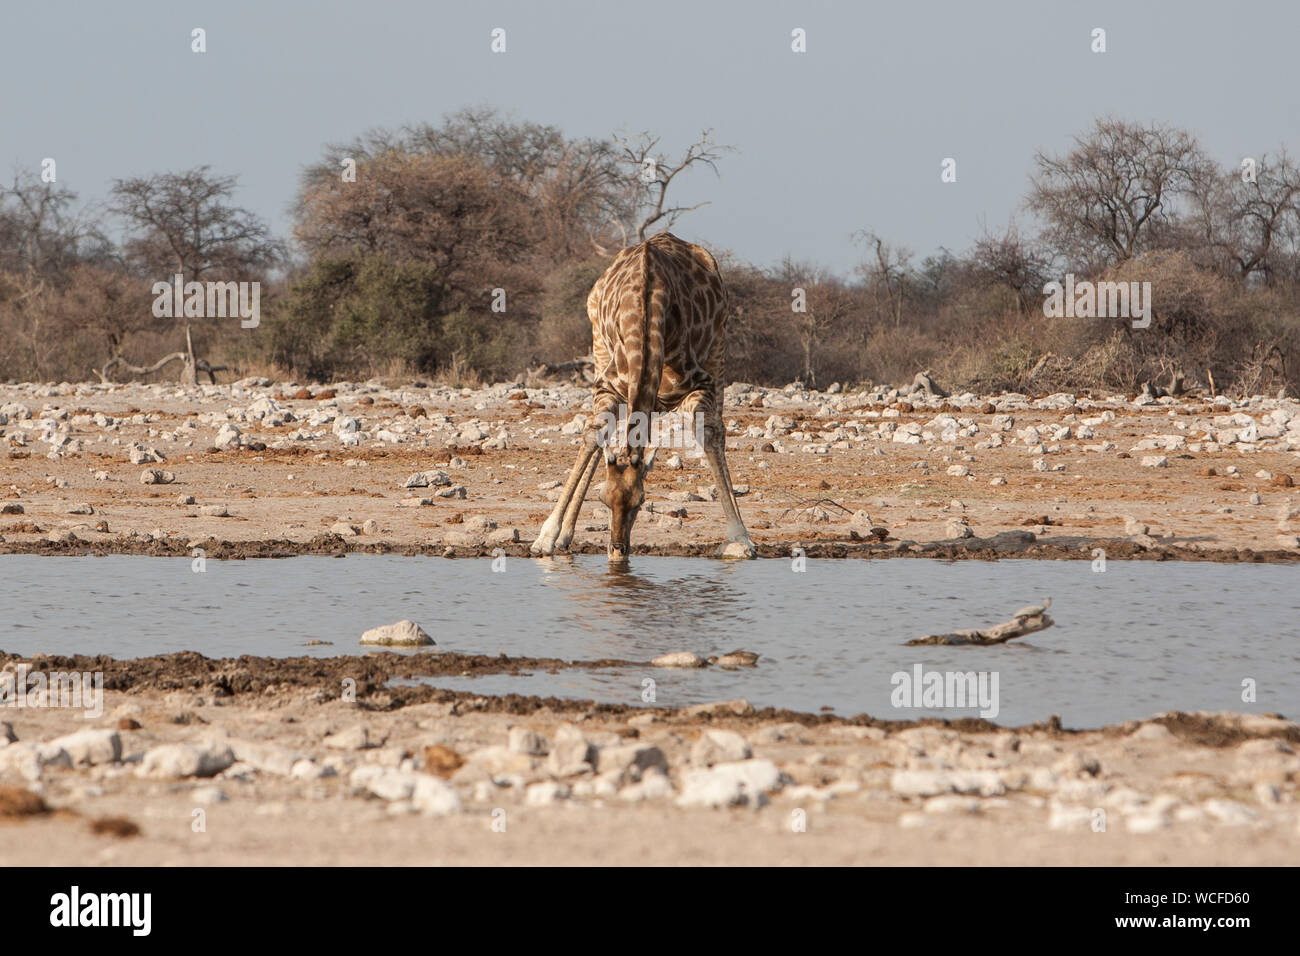 Giraffe Drinking In Waterhole Against Clear Sky Stock Photo